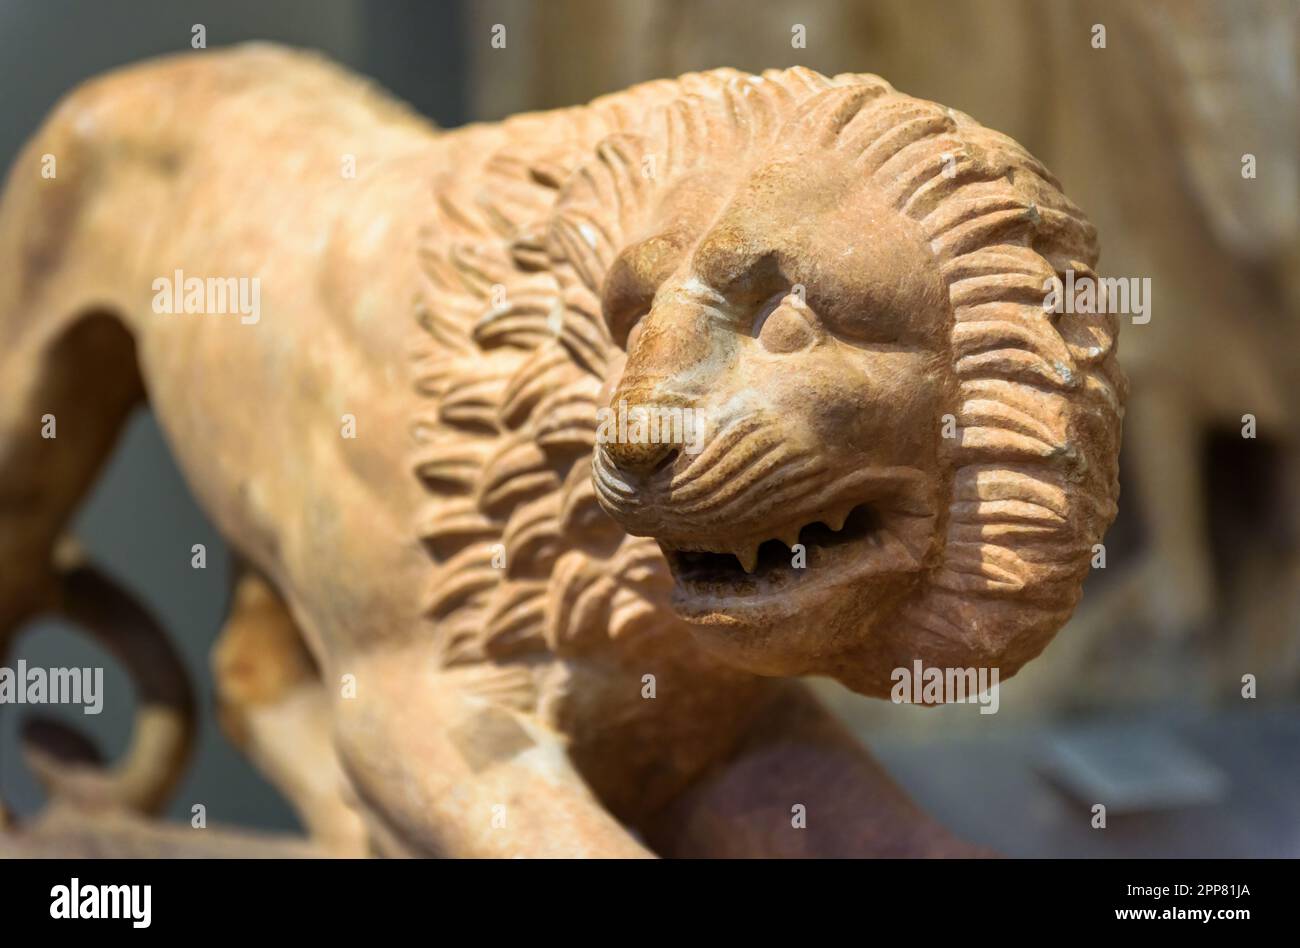 Statua in pietra del leone, scultura greca antica di animali, primo piano in marmo feroce leone. Tema della cultura, dell'antiquariato, dell'arte, della civiltà. Foto Stock